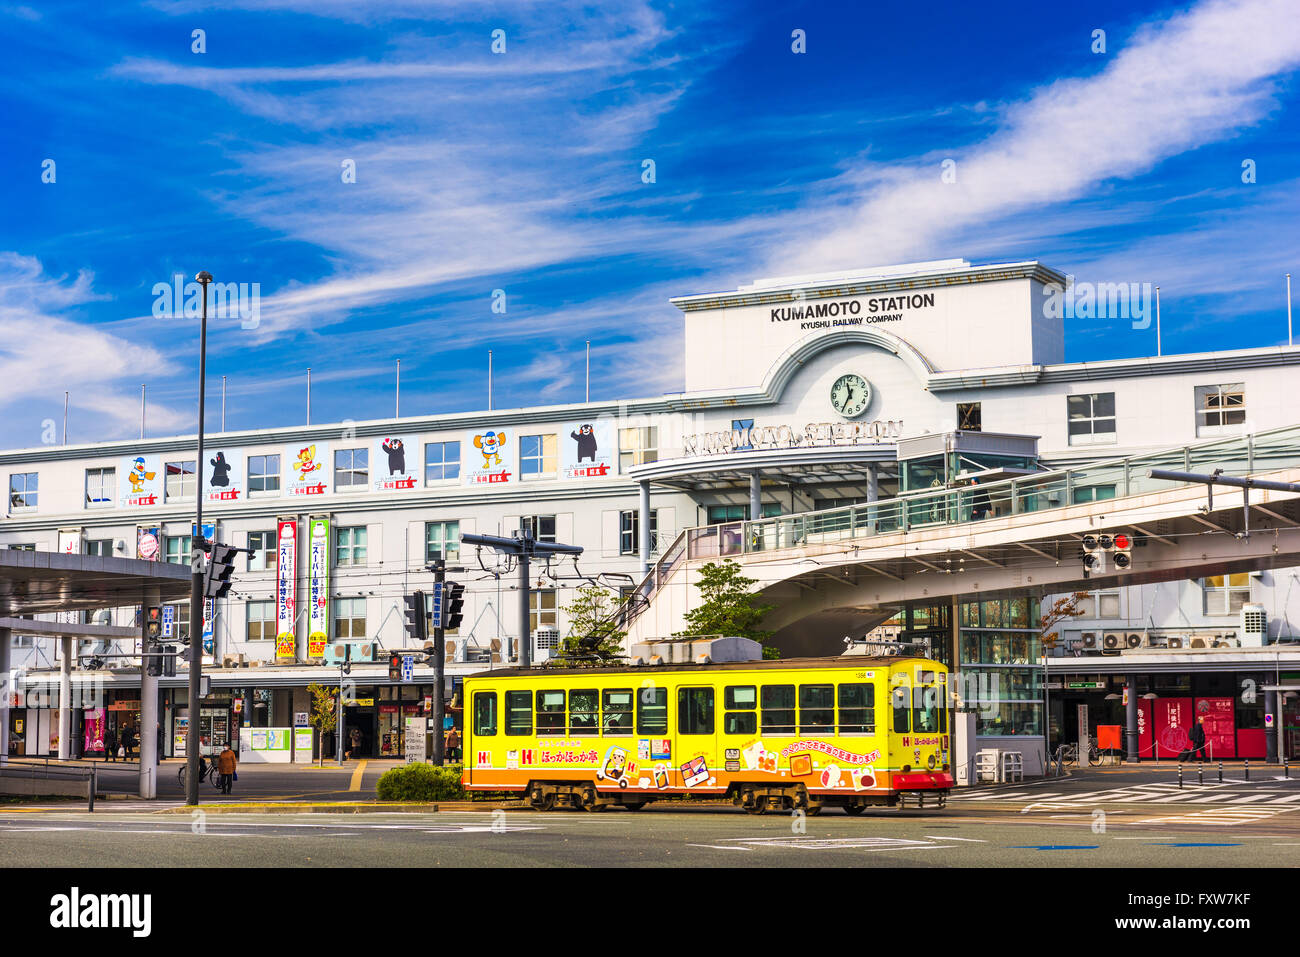 KUMAMOTO, Giappone - 9 dicembre 2016: una strada auto tira fuori della stazione di Kumamoto. È la principale stazione ferroviaria della città. Foto Stock